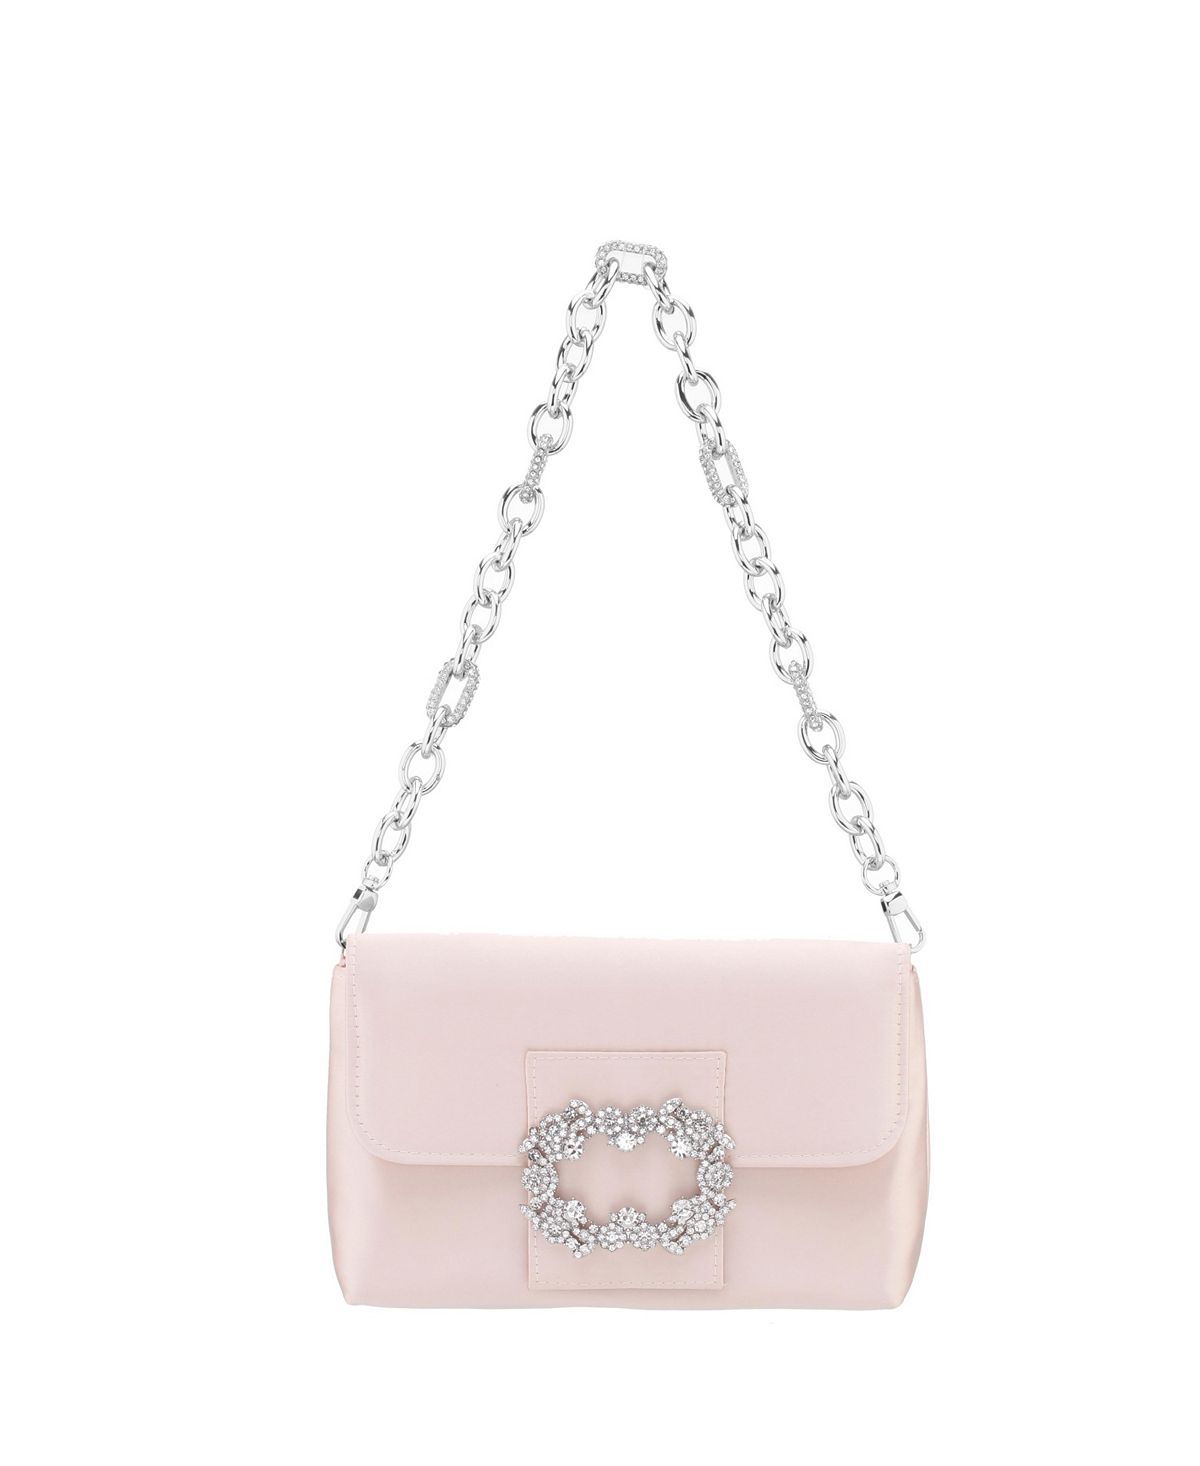 Женская сумка Baguette с пряжкой из кристаллов Nina 99 s special design pearl rose rosary 10 pieces